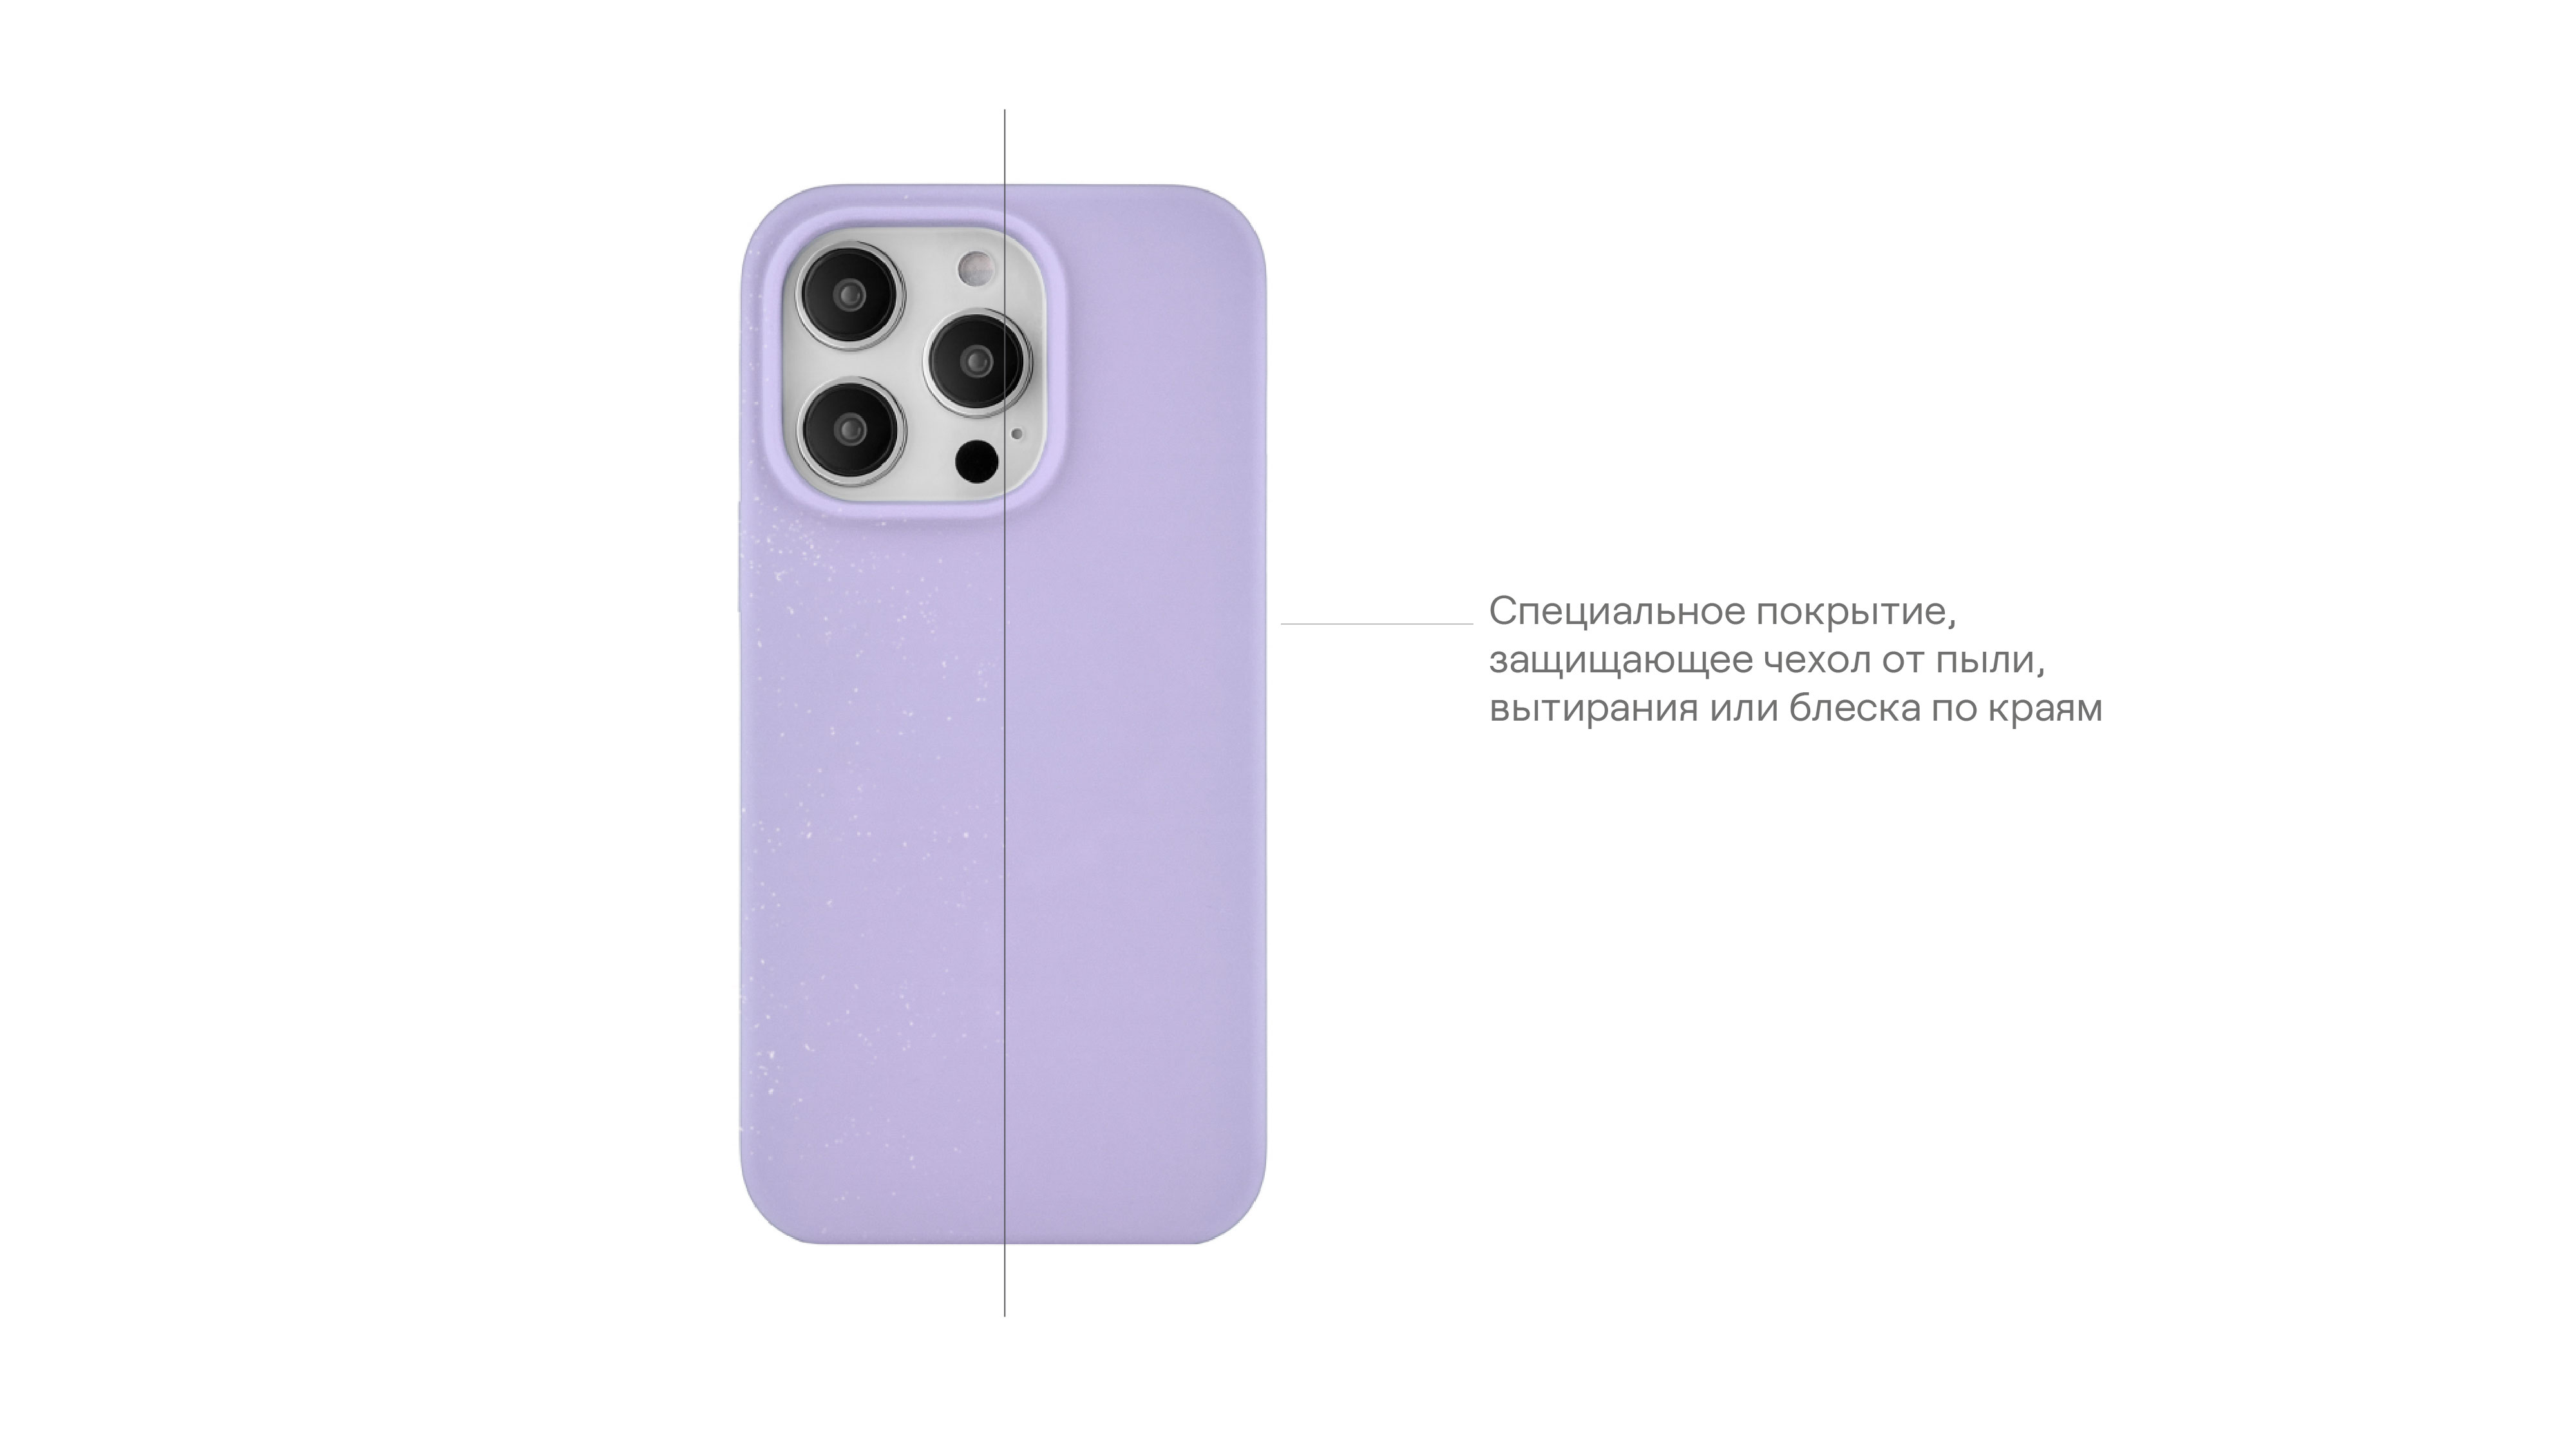 Чехол защитный uBear Touch Case для  iPhone 14 Pro, силикон, софт-тач, фиолетовый